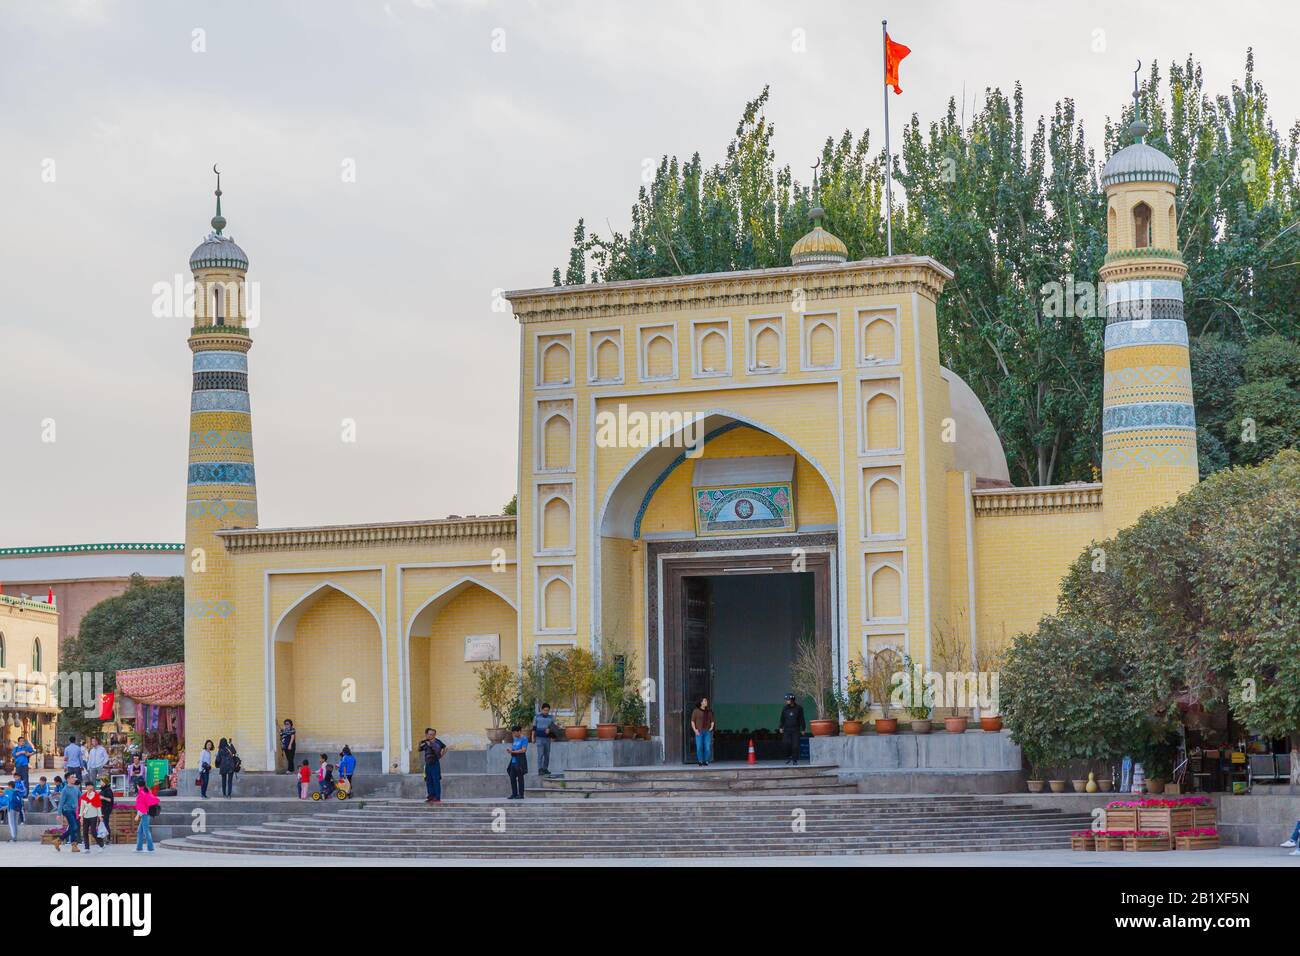 Vue Sur La Mosquée Id Kah. Un drapeau chinois est monté au sommet de la mosquée. ID Kah est la plus grande mosquée de Chine et située dans le centre-ville de Kashgar Banque D'Images